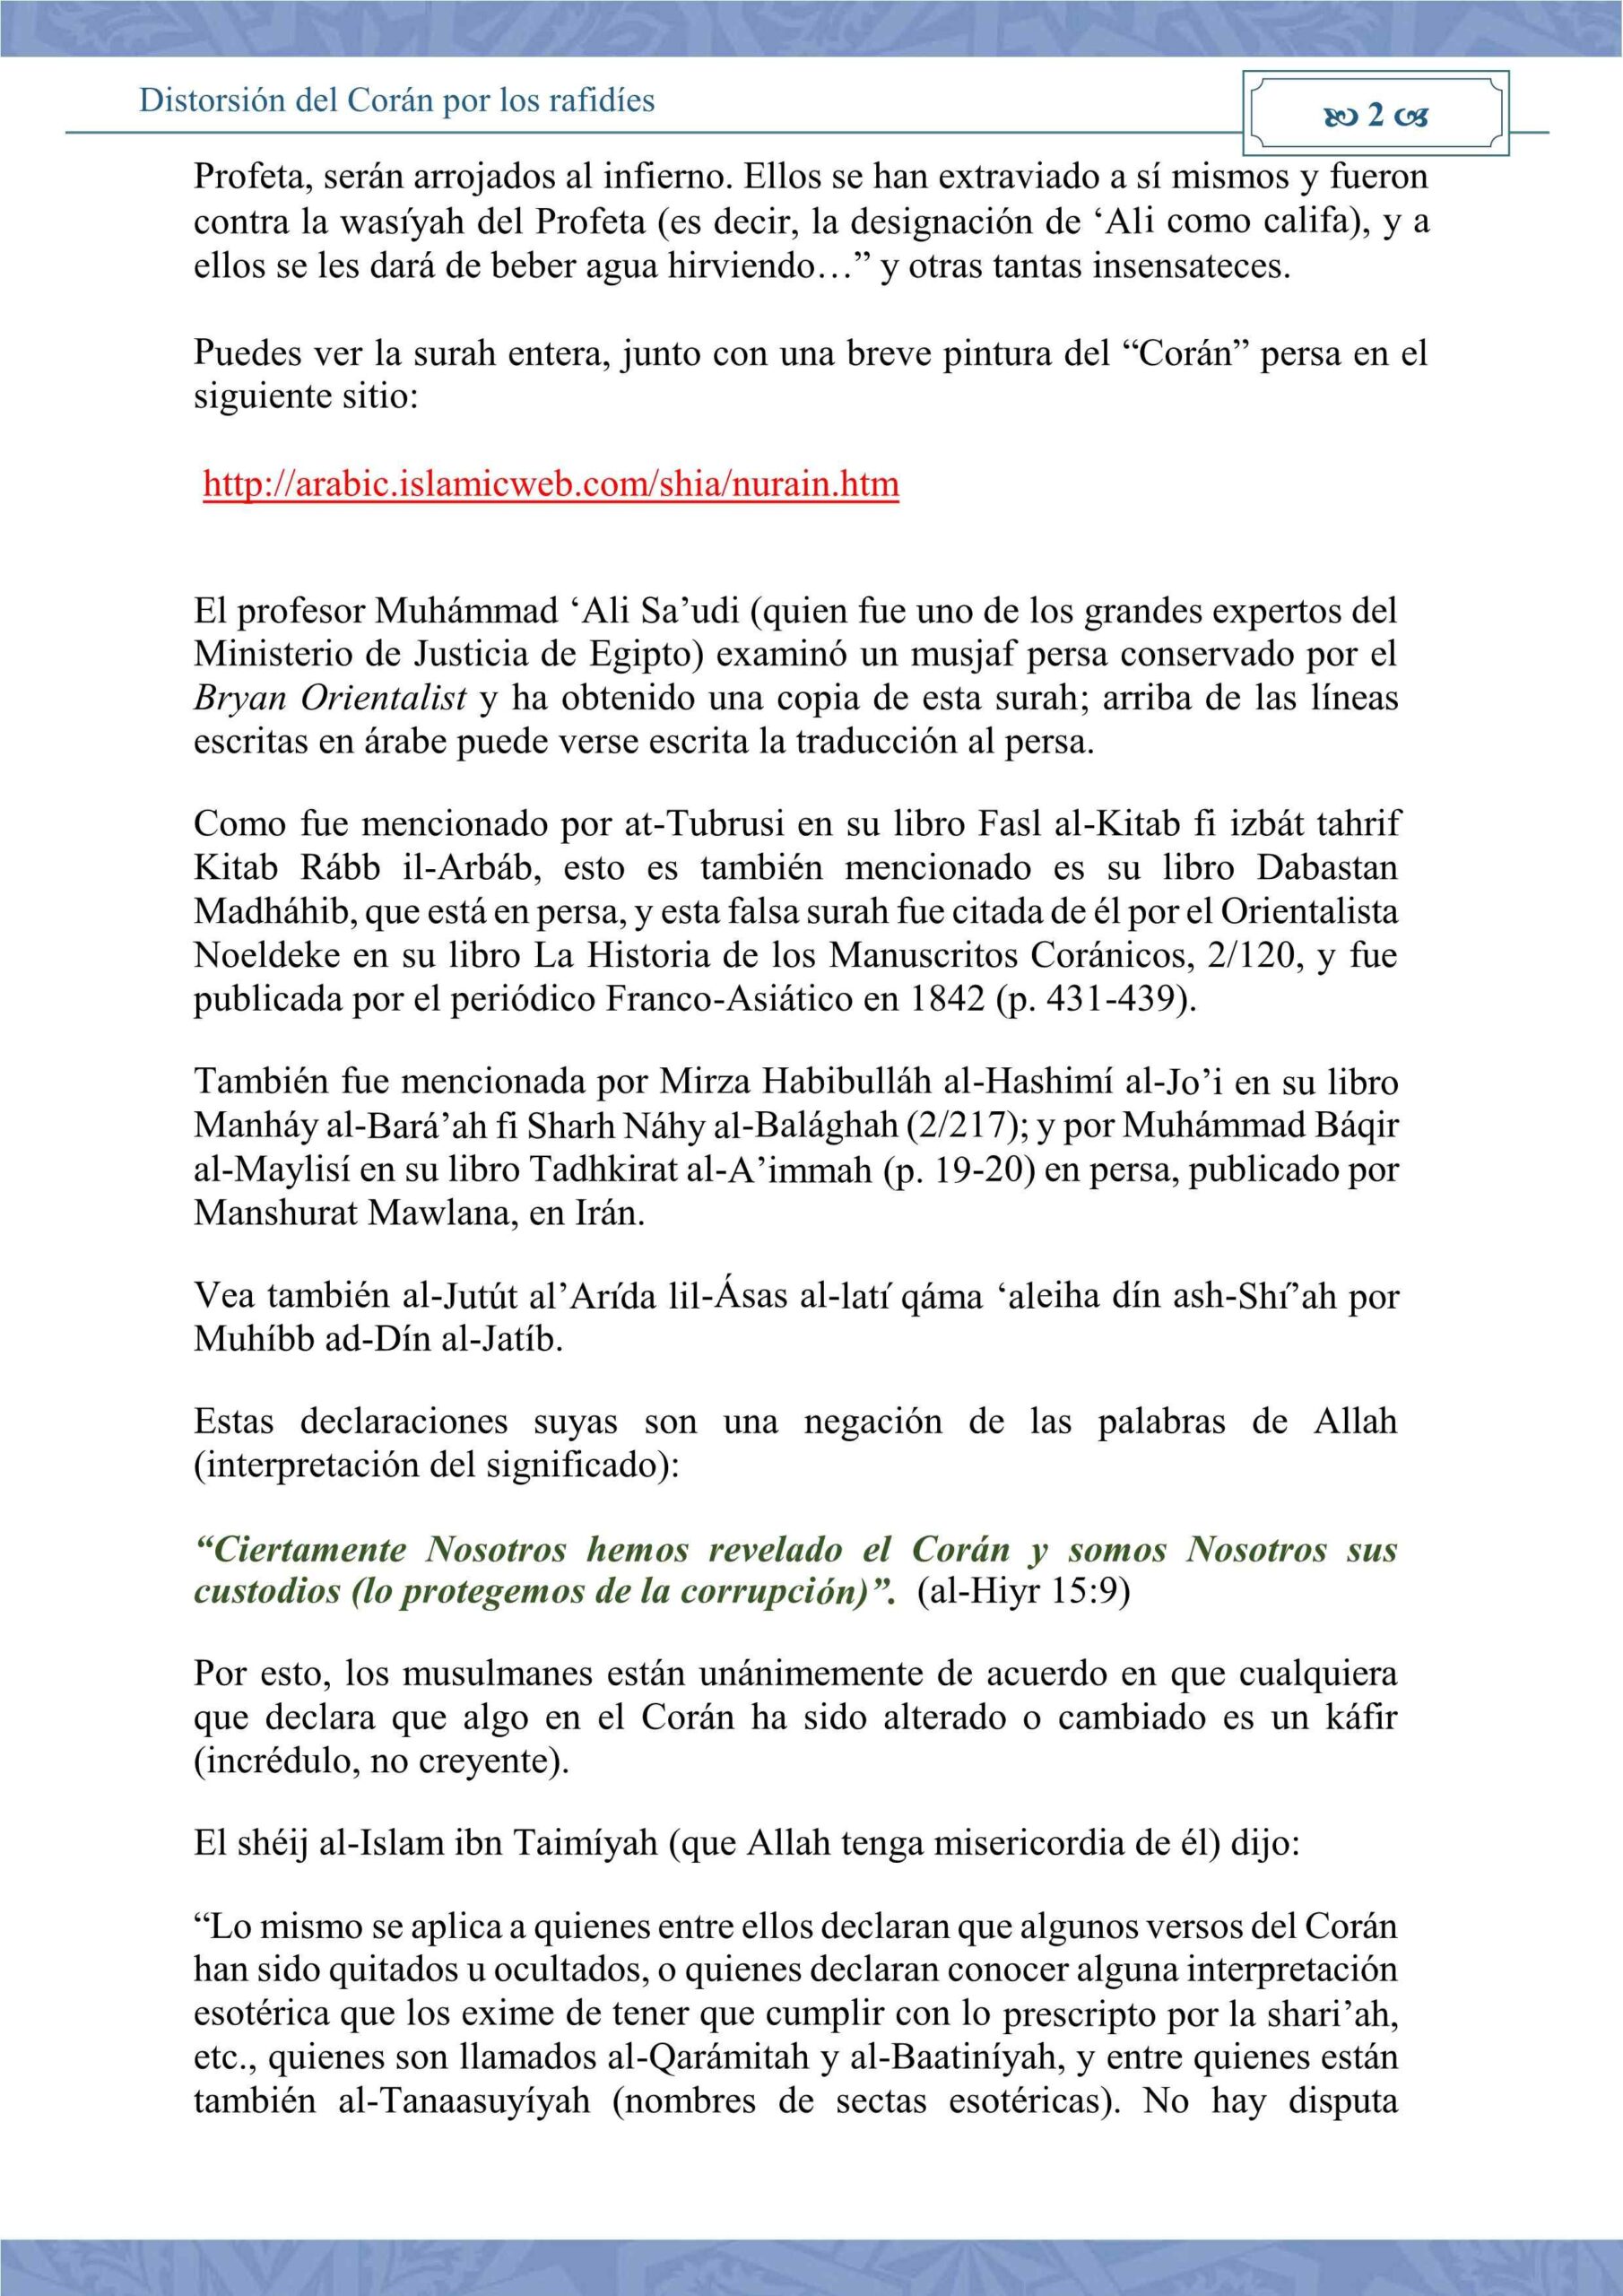 إسباني - تحريف القرآن عند الرافضة - Distorsión del Corán por los rafidíes.pdf, 5-Sayfa 